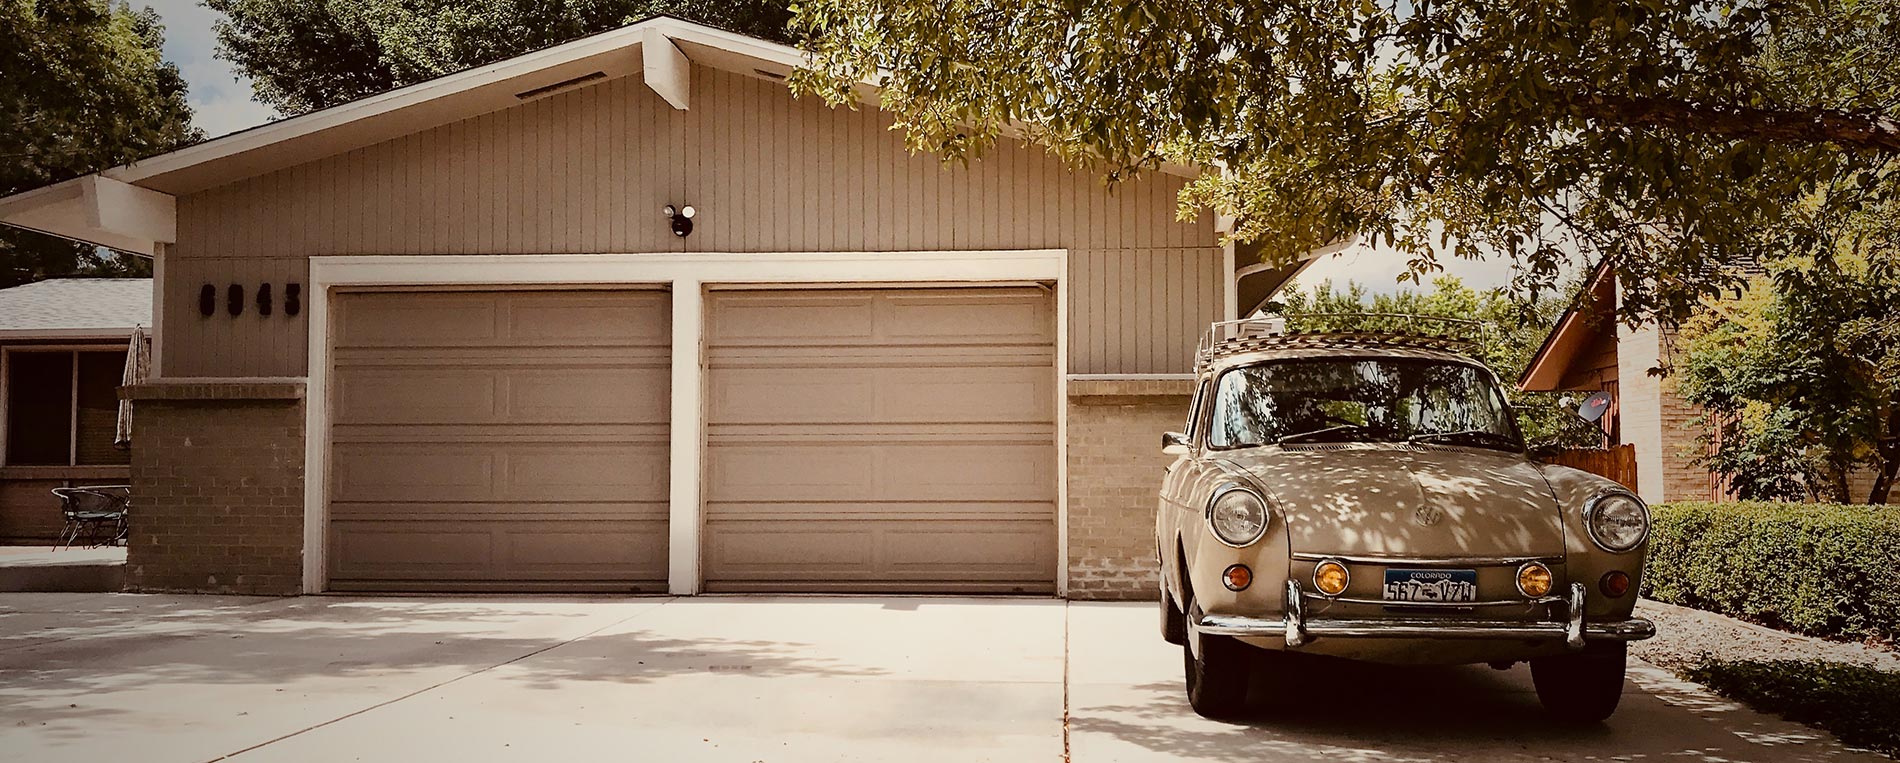 The Best Way to Choose a New Garage Door